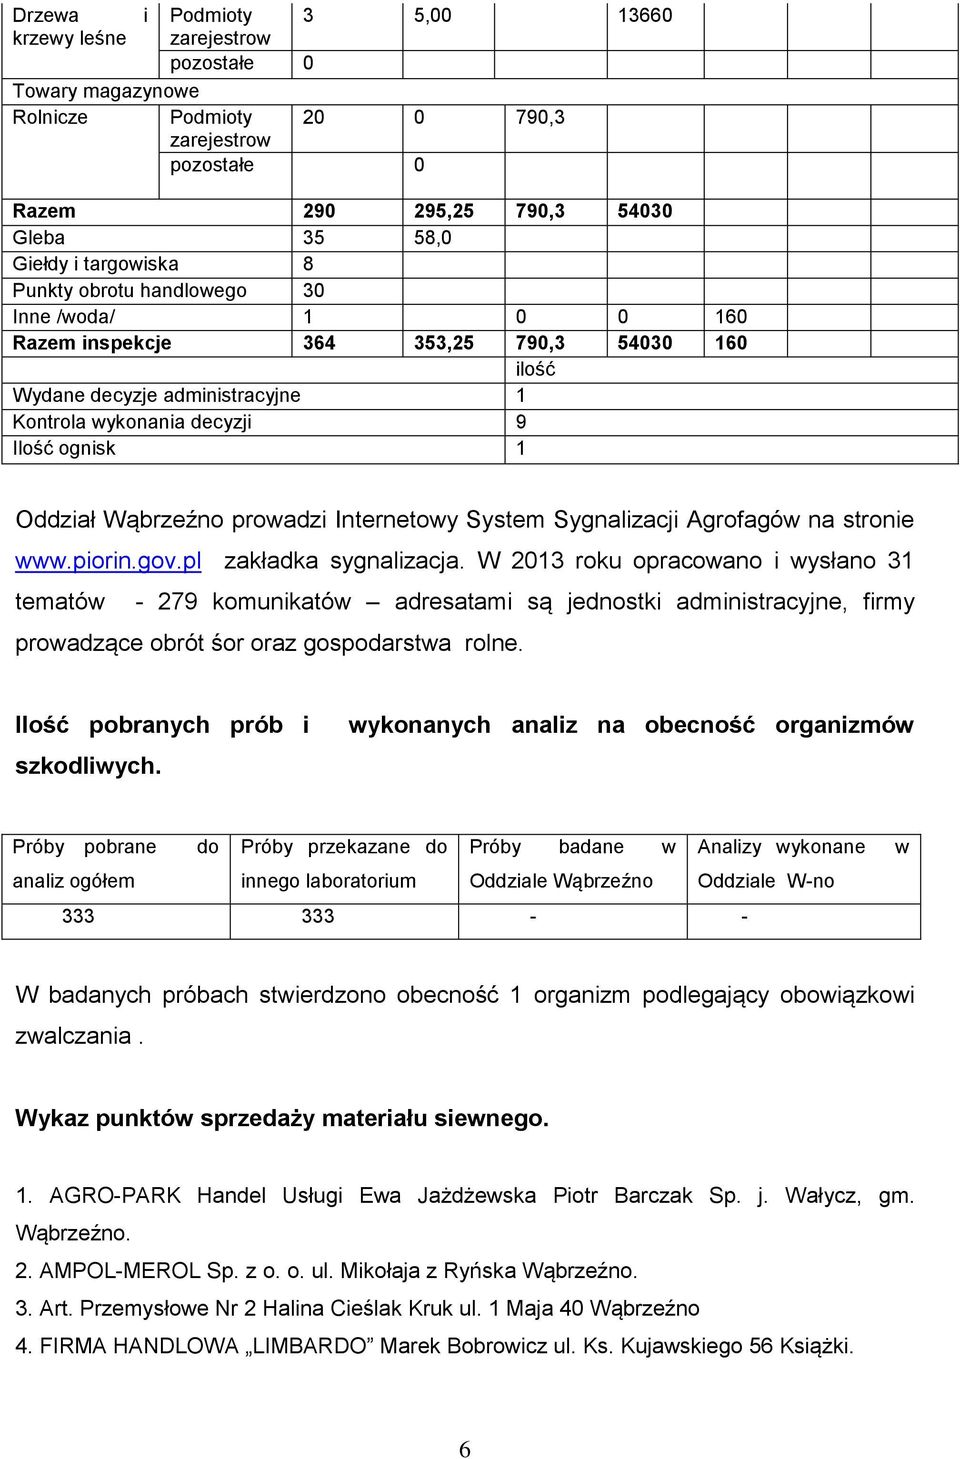 Internetowy System Sygnalizacji Agrofagów na stronie www.piorin.gov.pl zakładka sygnalizacja.